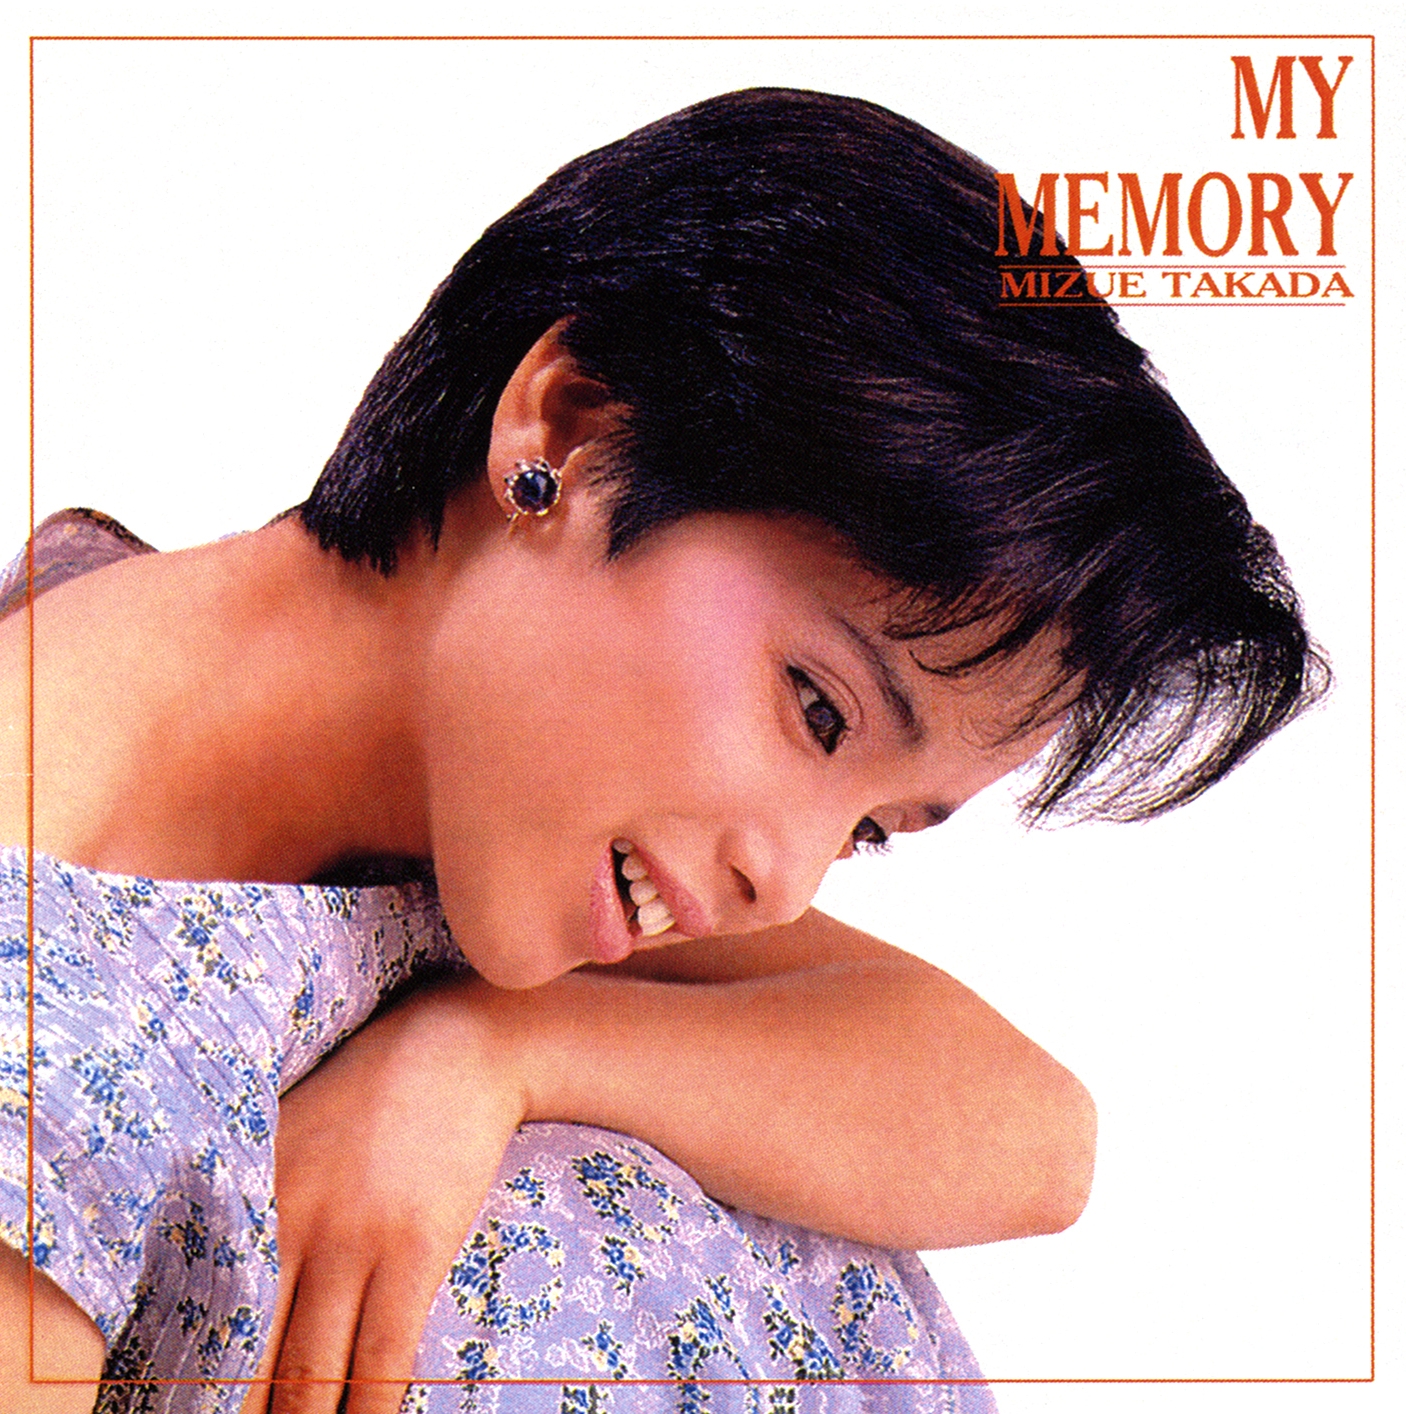 20160526.02.21 Mizue Takada - My memory (1985) cover.jpg